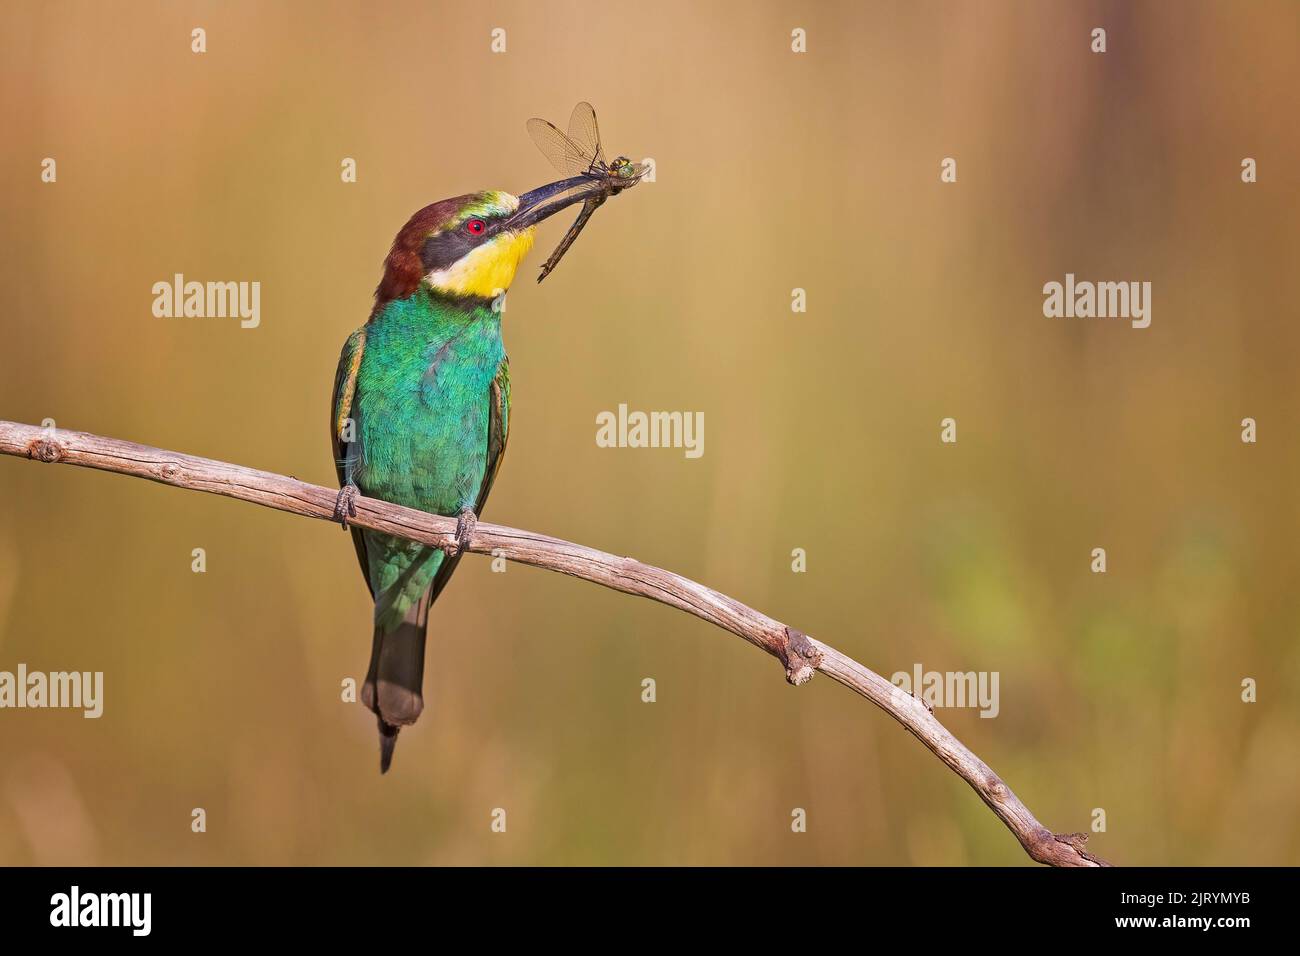 European Bee-eater (Merops apiaster) avec grande libellule comme proie, soleil d'été, coucher de soleil, fourrageing, Saxe-Anhalt, Allemagne Banque D'Images